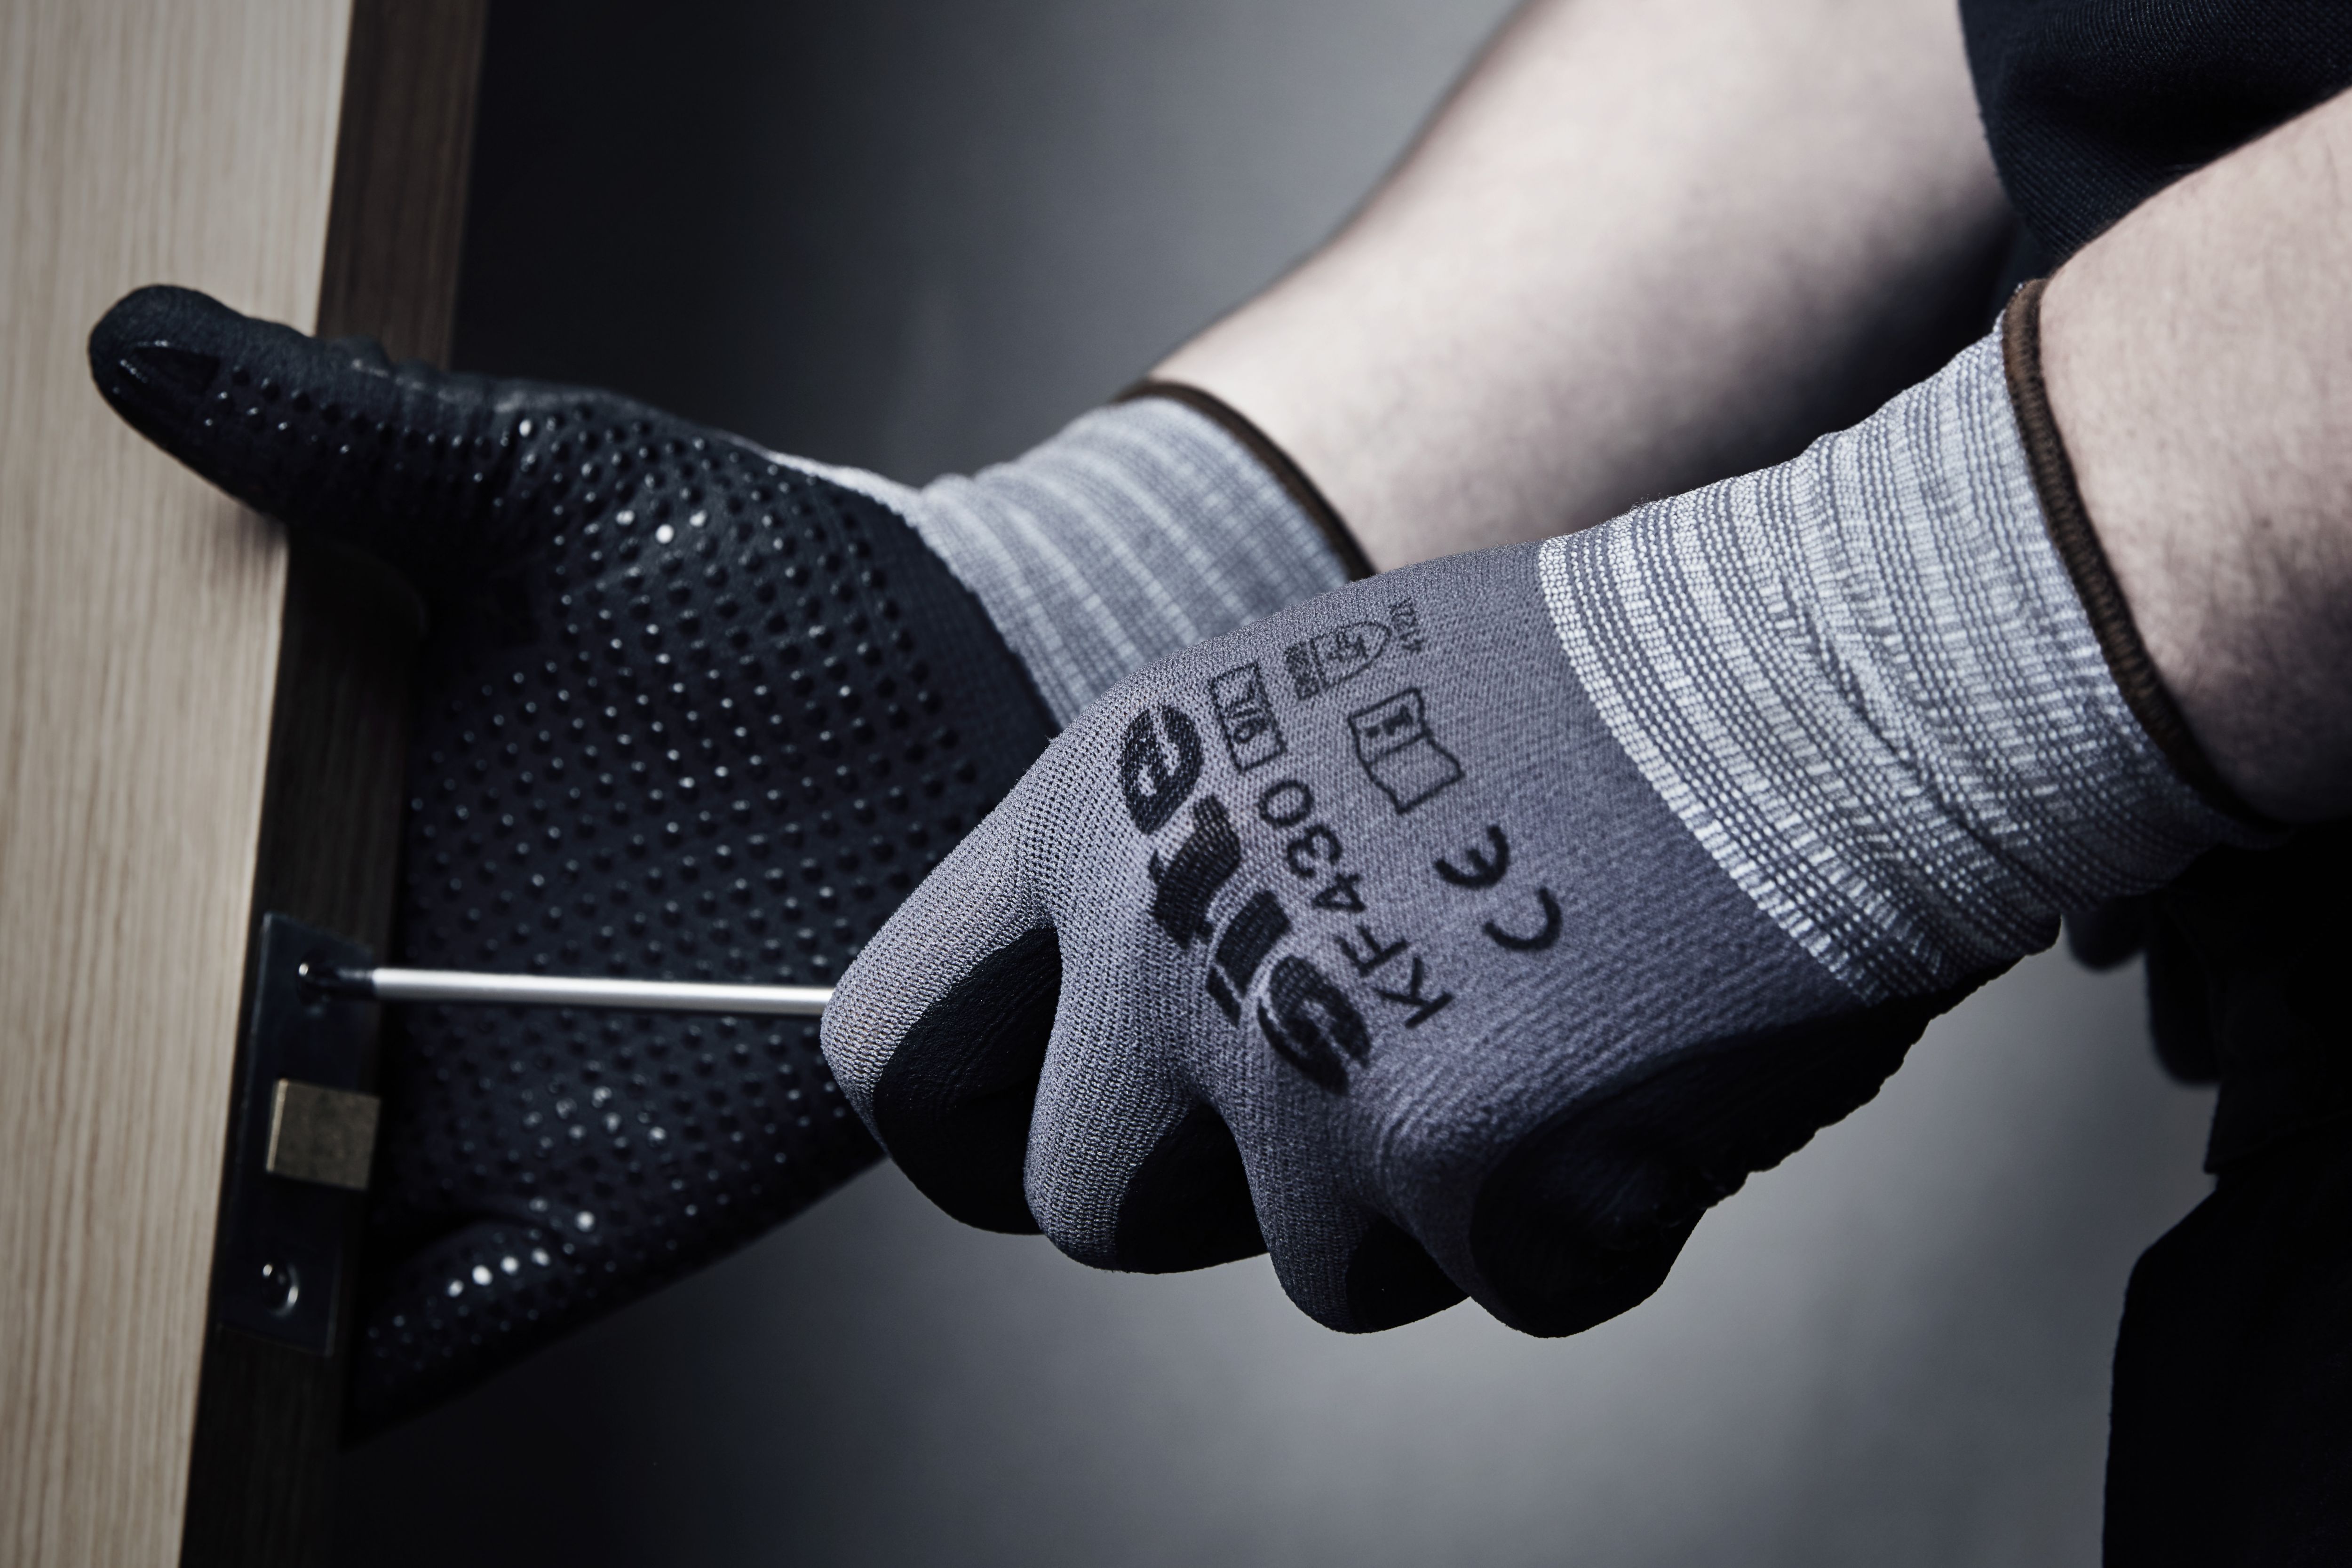 Site Nitrile Secure handling gloves, Large